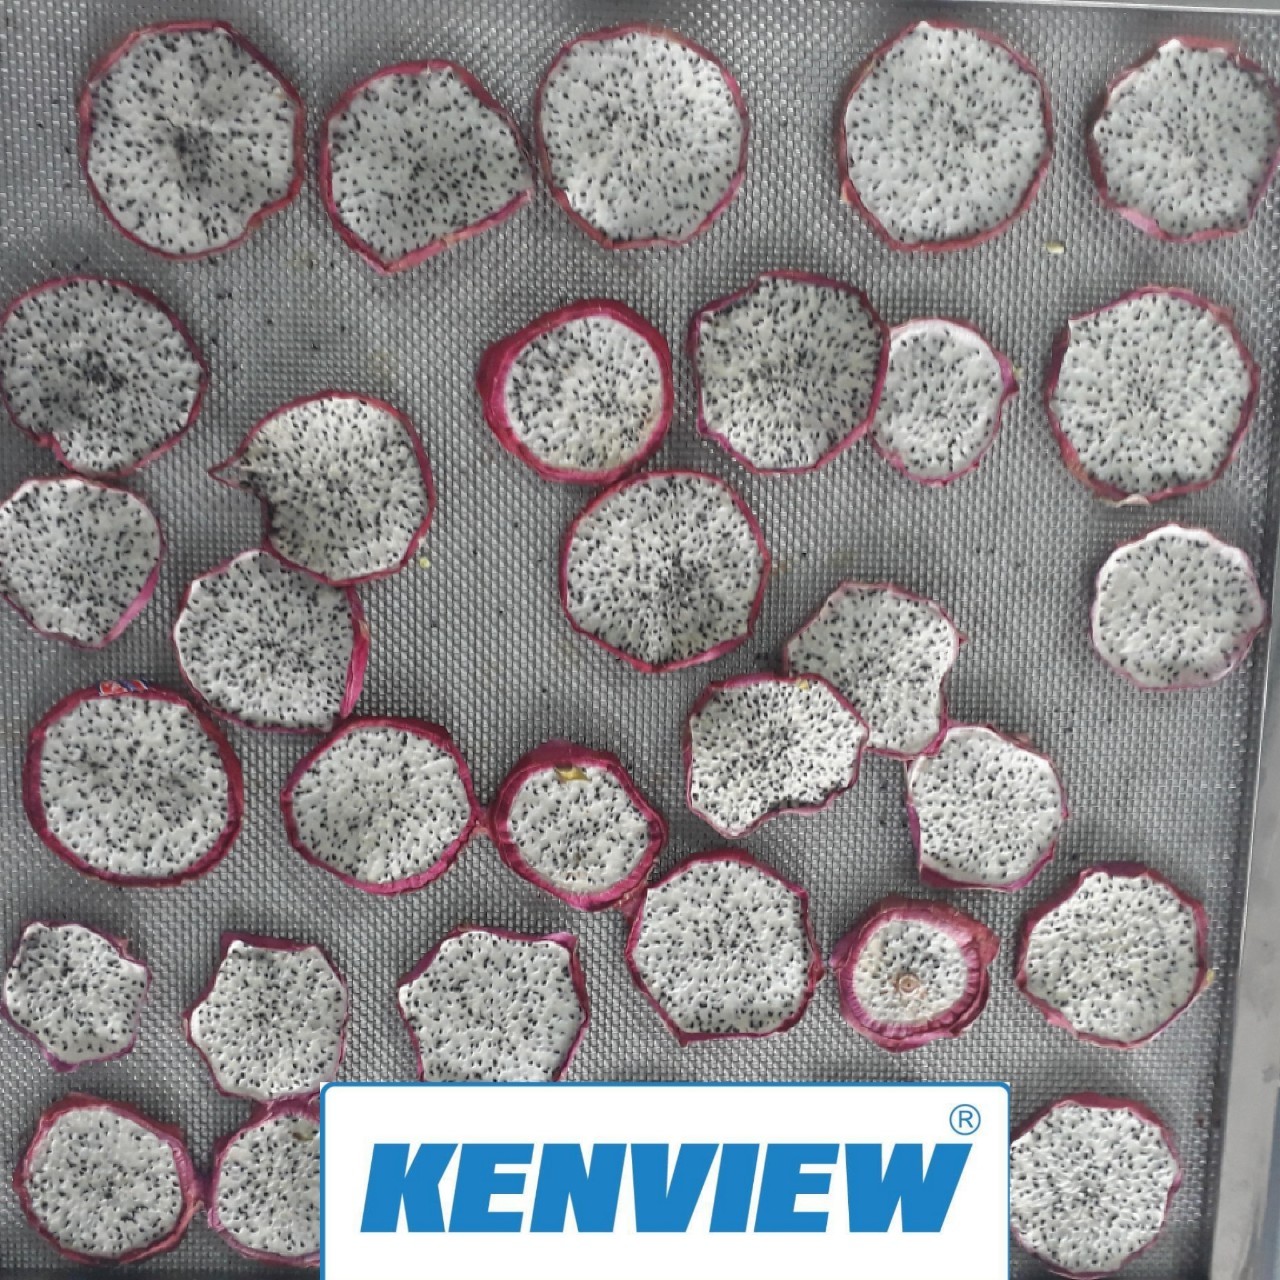 Cung cấp máy sấy trái cây kenview – Phan Rang